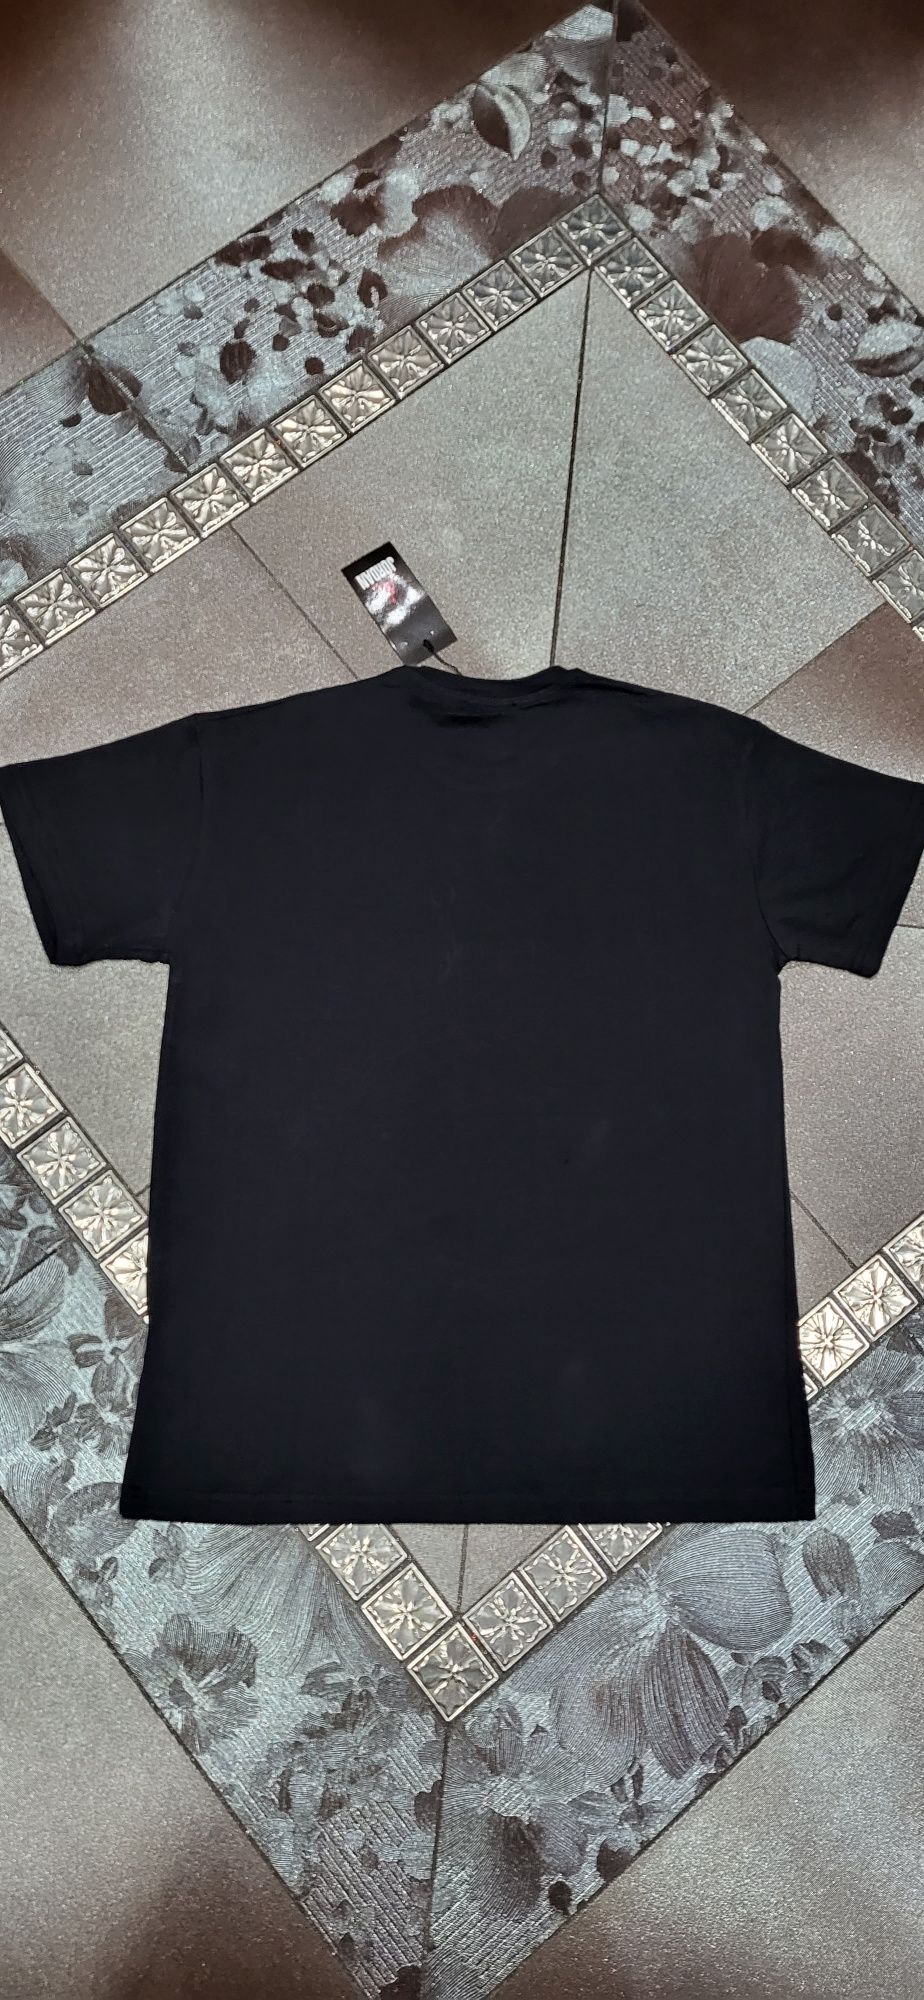 Jordan czarna koszulka męska t-shirt młodzieżowa logo premium M L XL